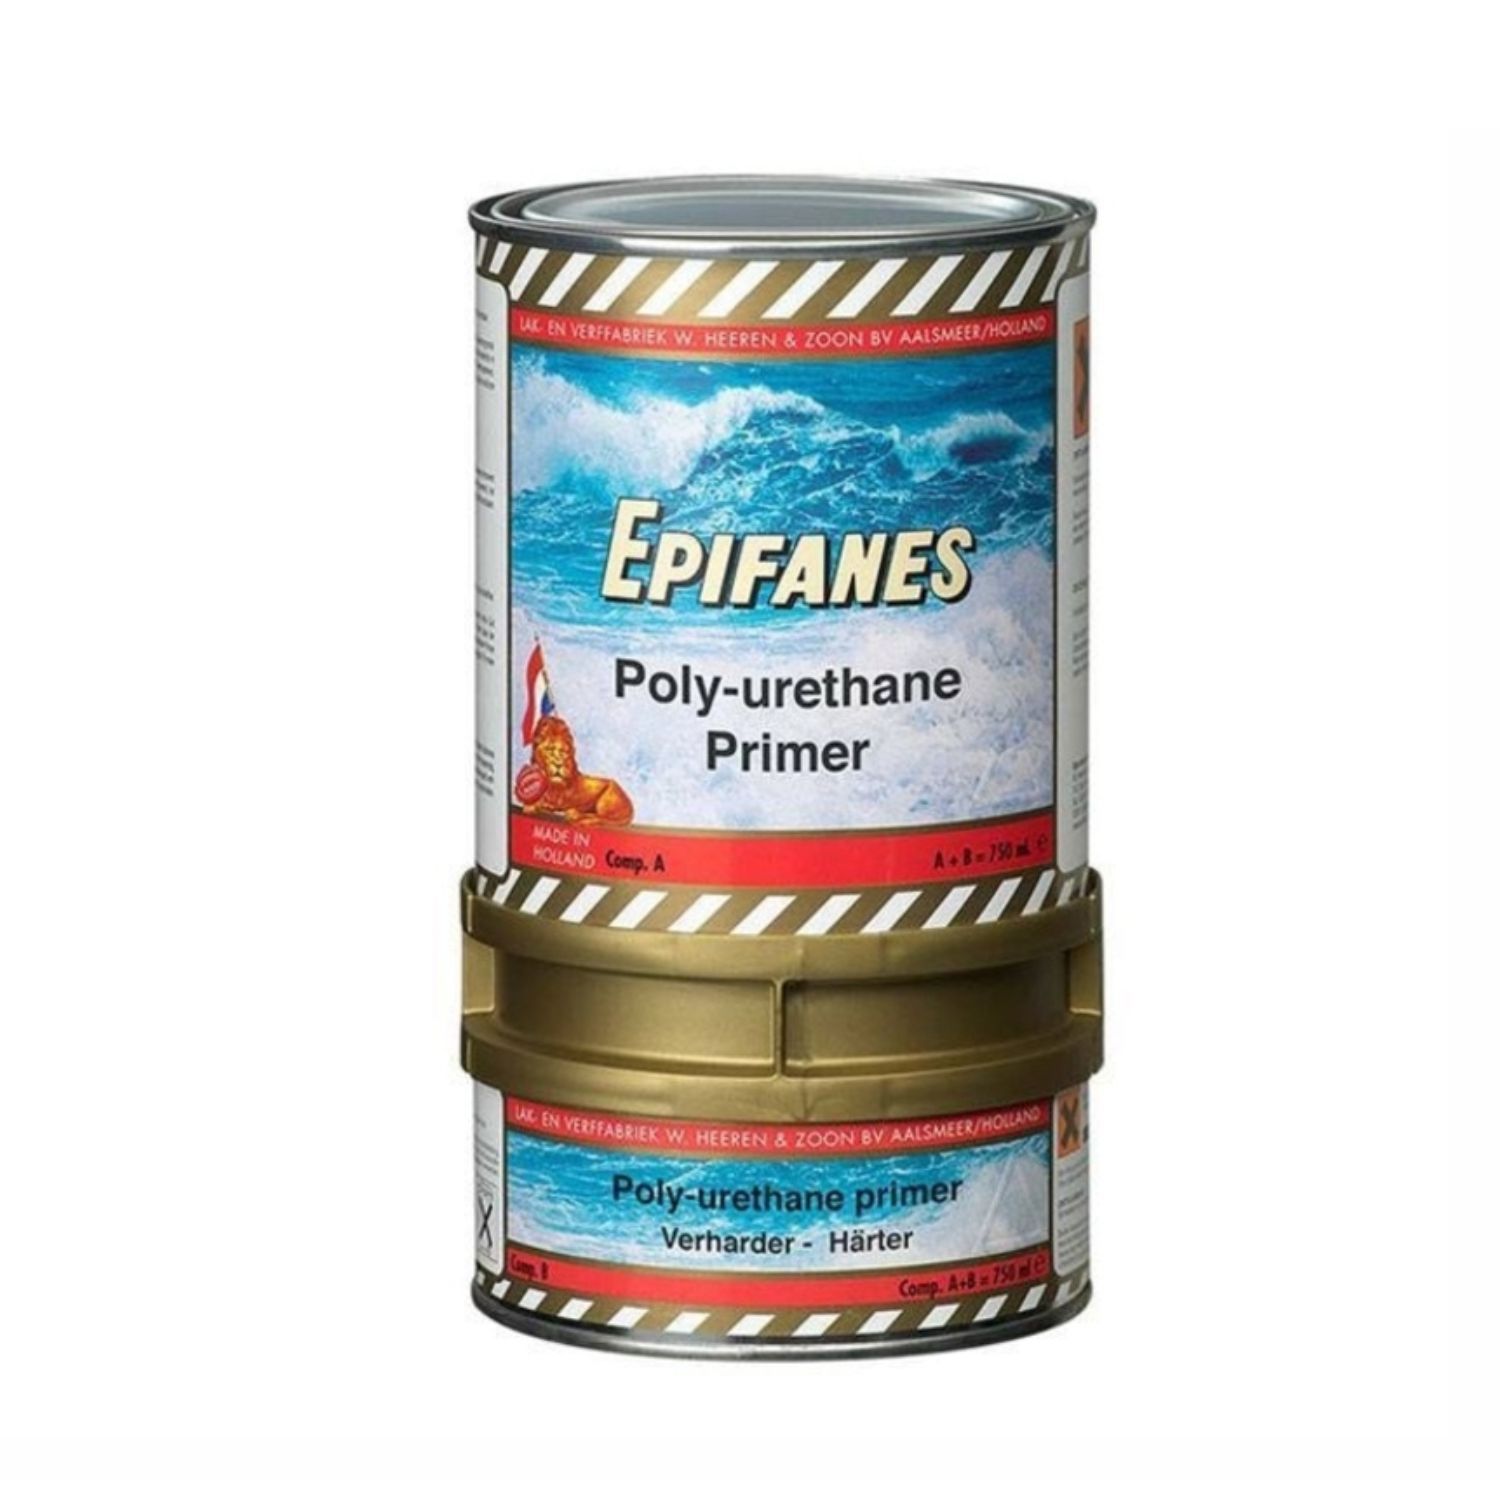 Epifanes poly-urethane primer